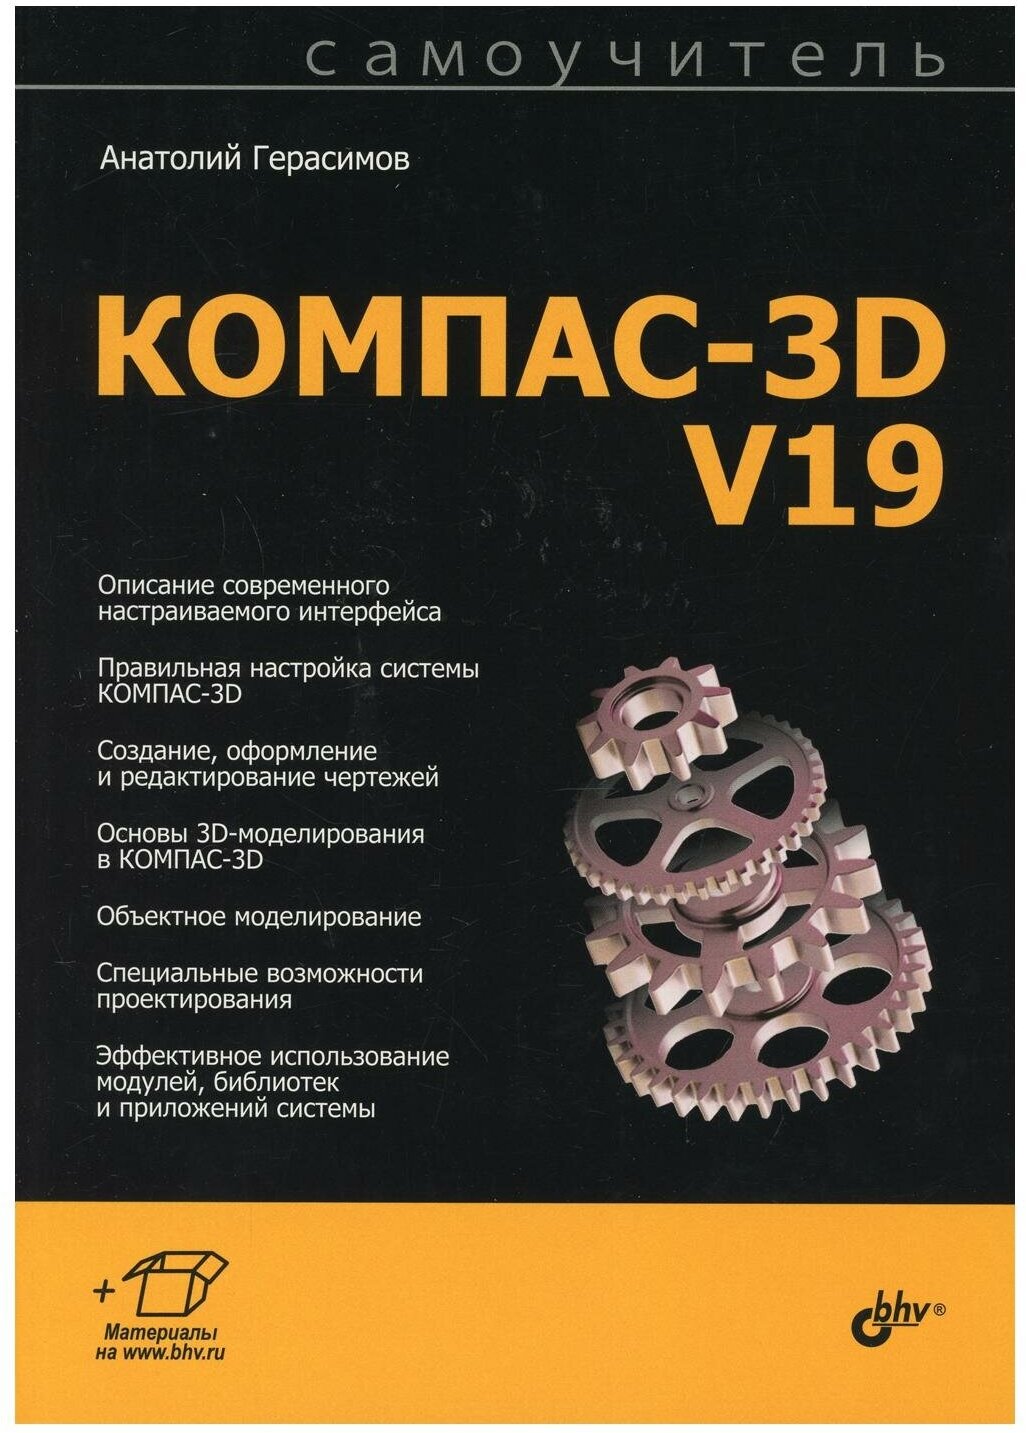 Самоучитель КОМПАС-3D V19.